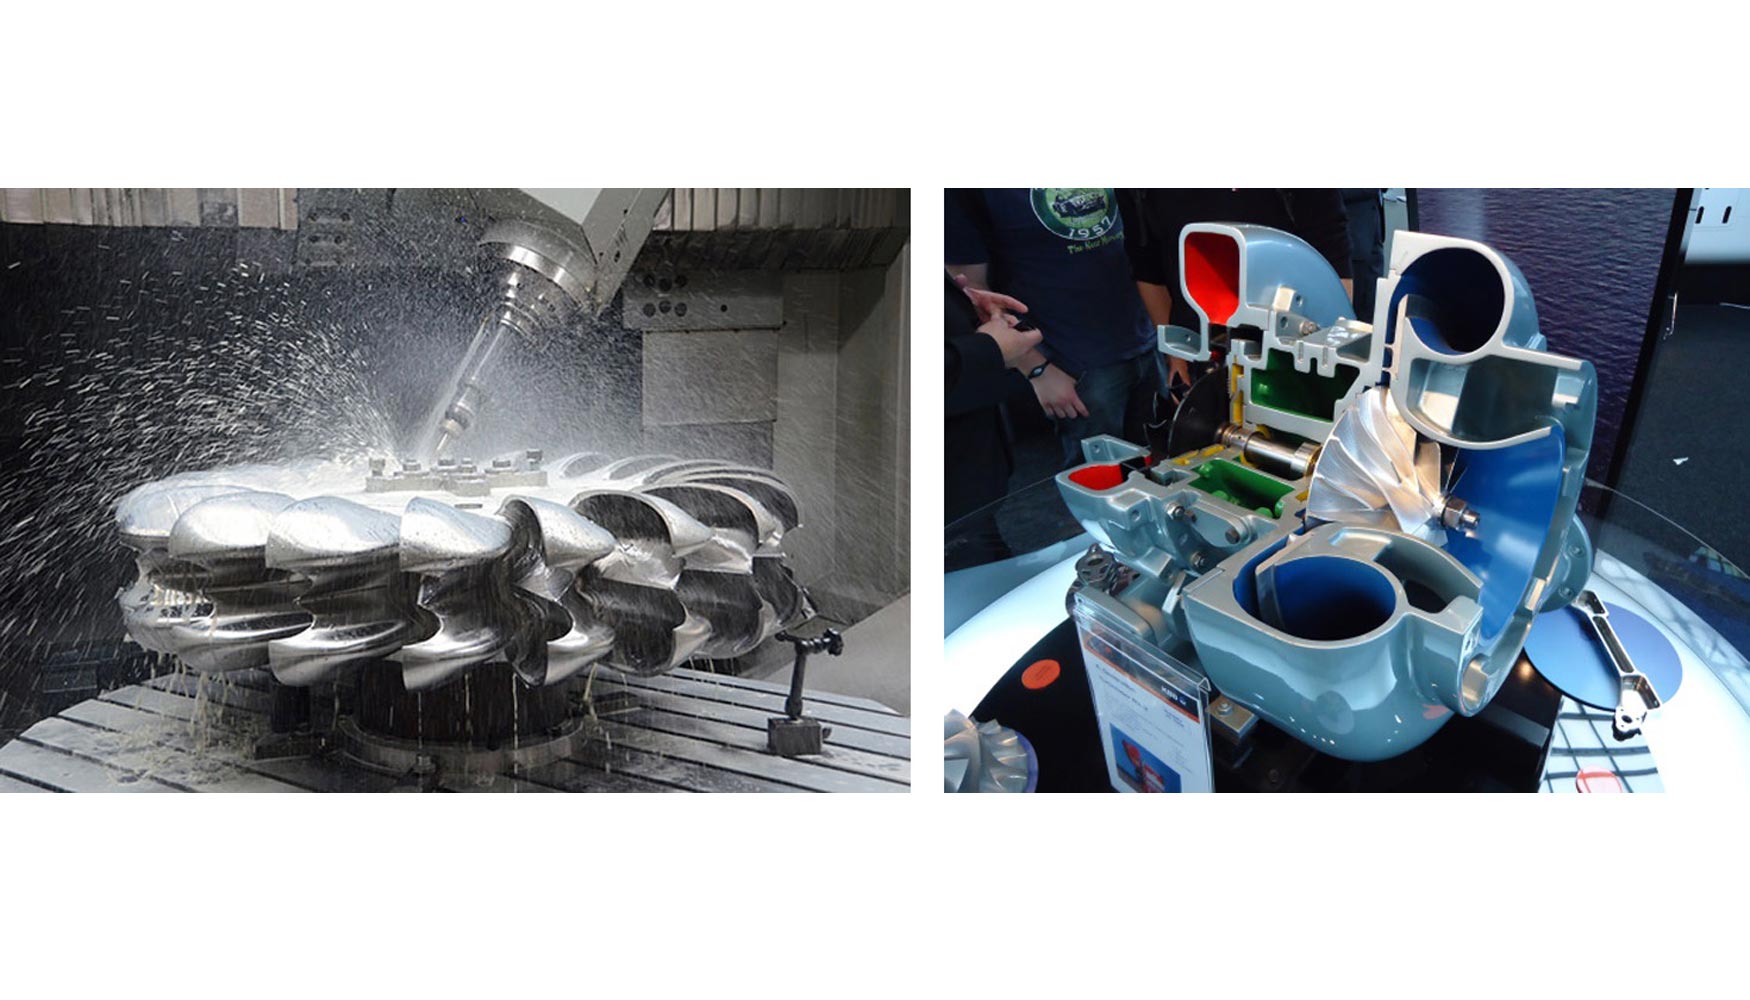 Mecanizado de turbina pelton (Mavel a.s) y turbocompresor (KBB GmbH.)